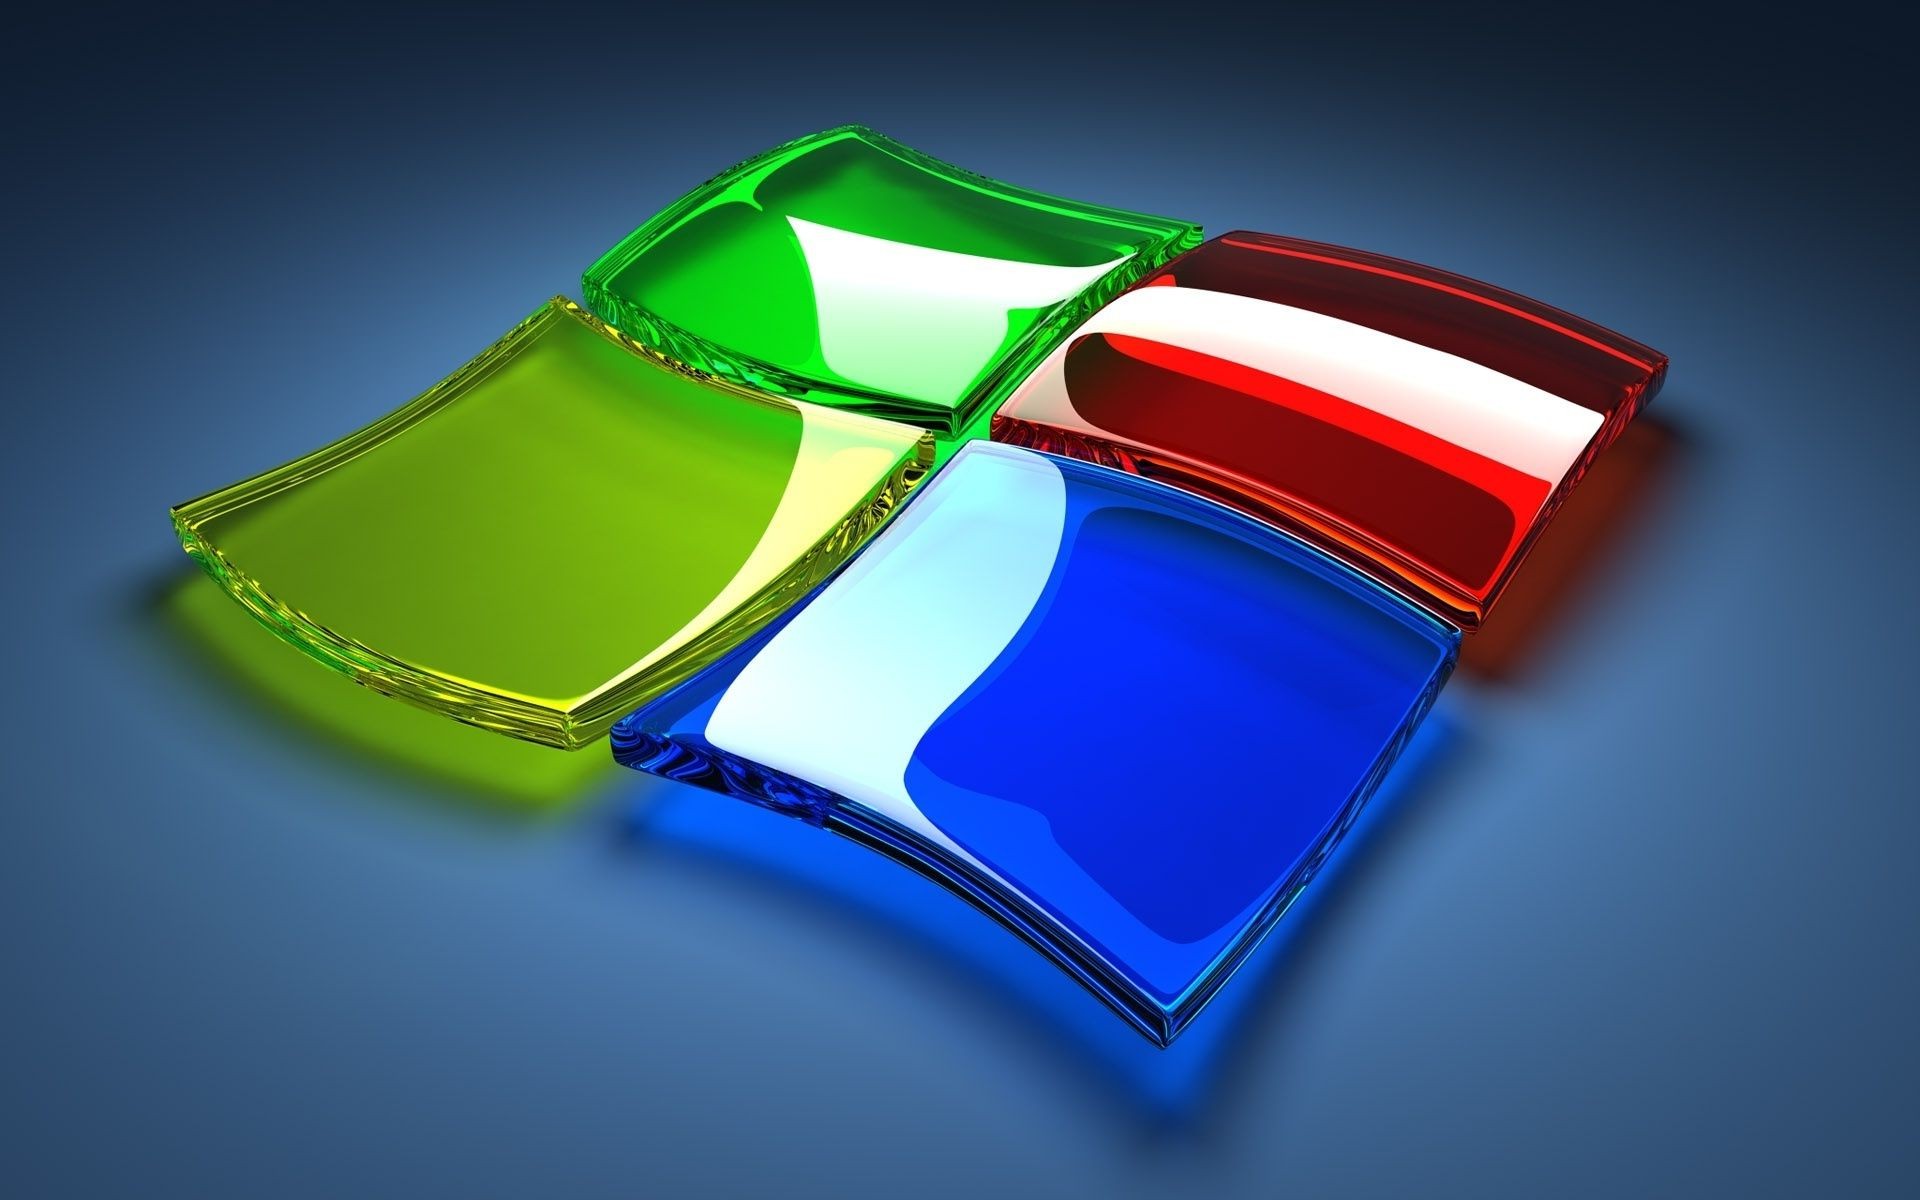 Логотип windows из стекла разных цветов. Обои для рабочего стола.